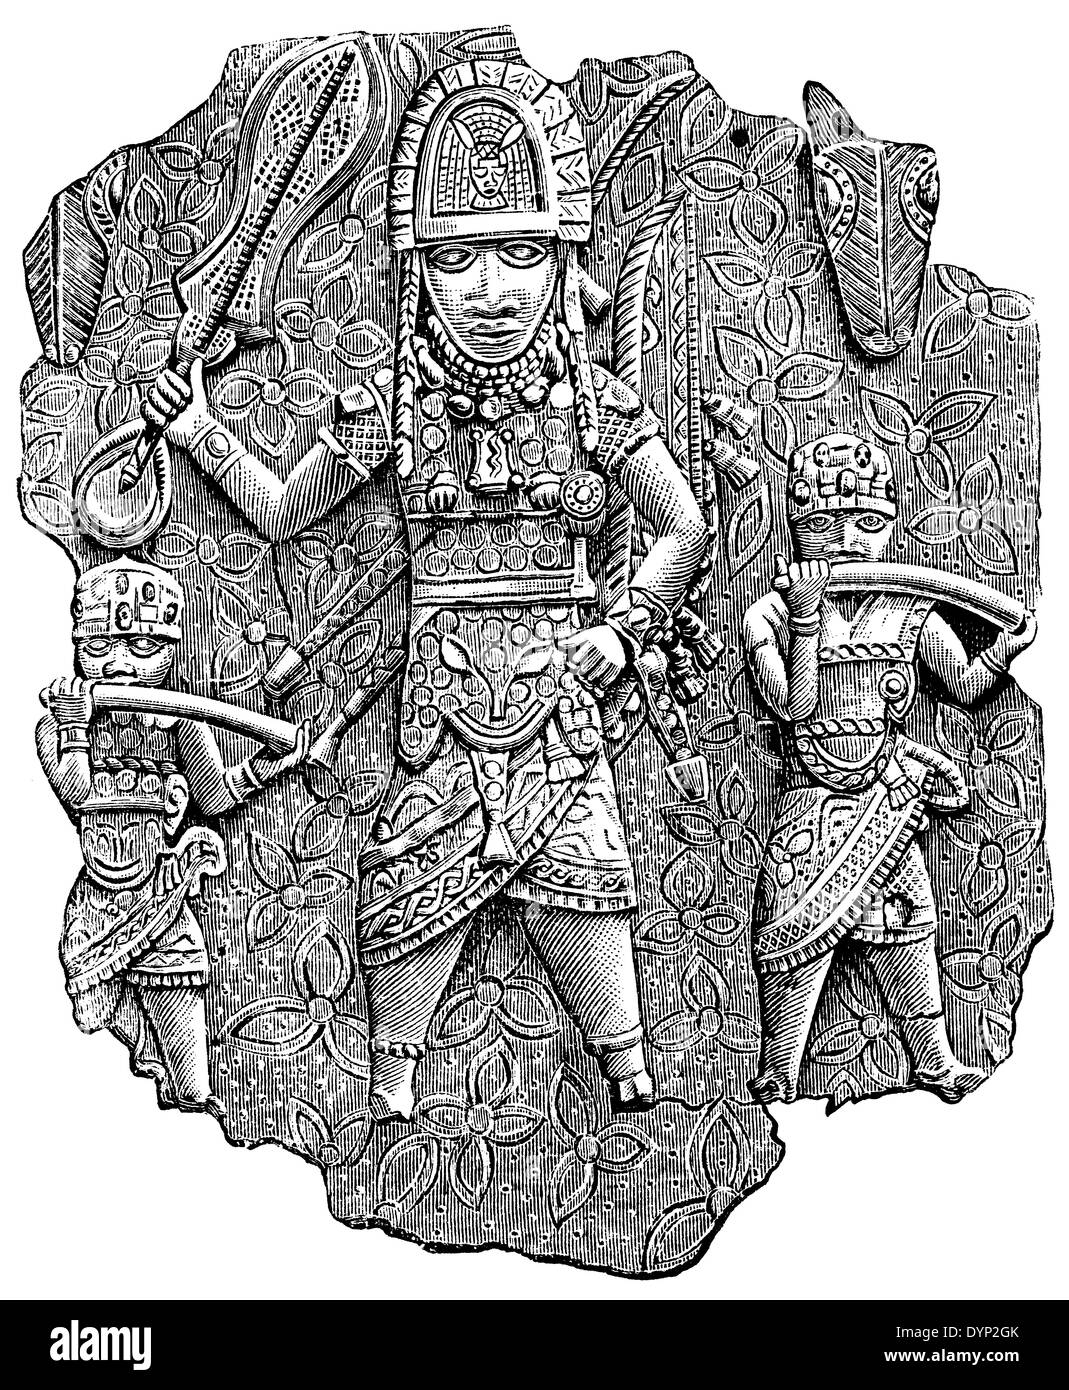 Relief en bronze, Bénin, illustration de l'Encyclopédie Soviétique, 1926 Banque D'Images